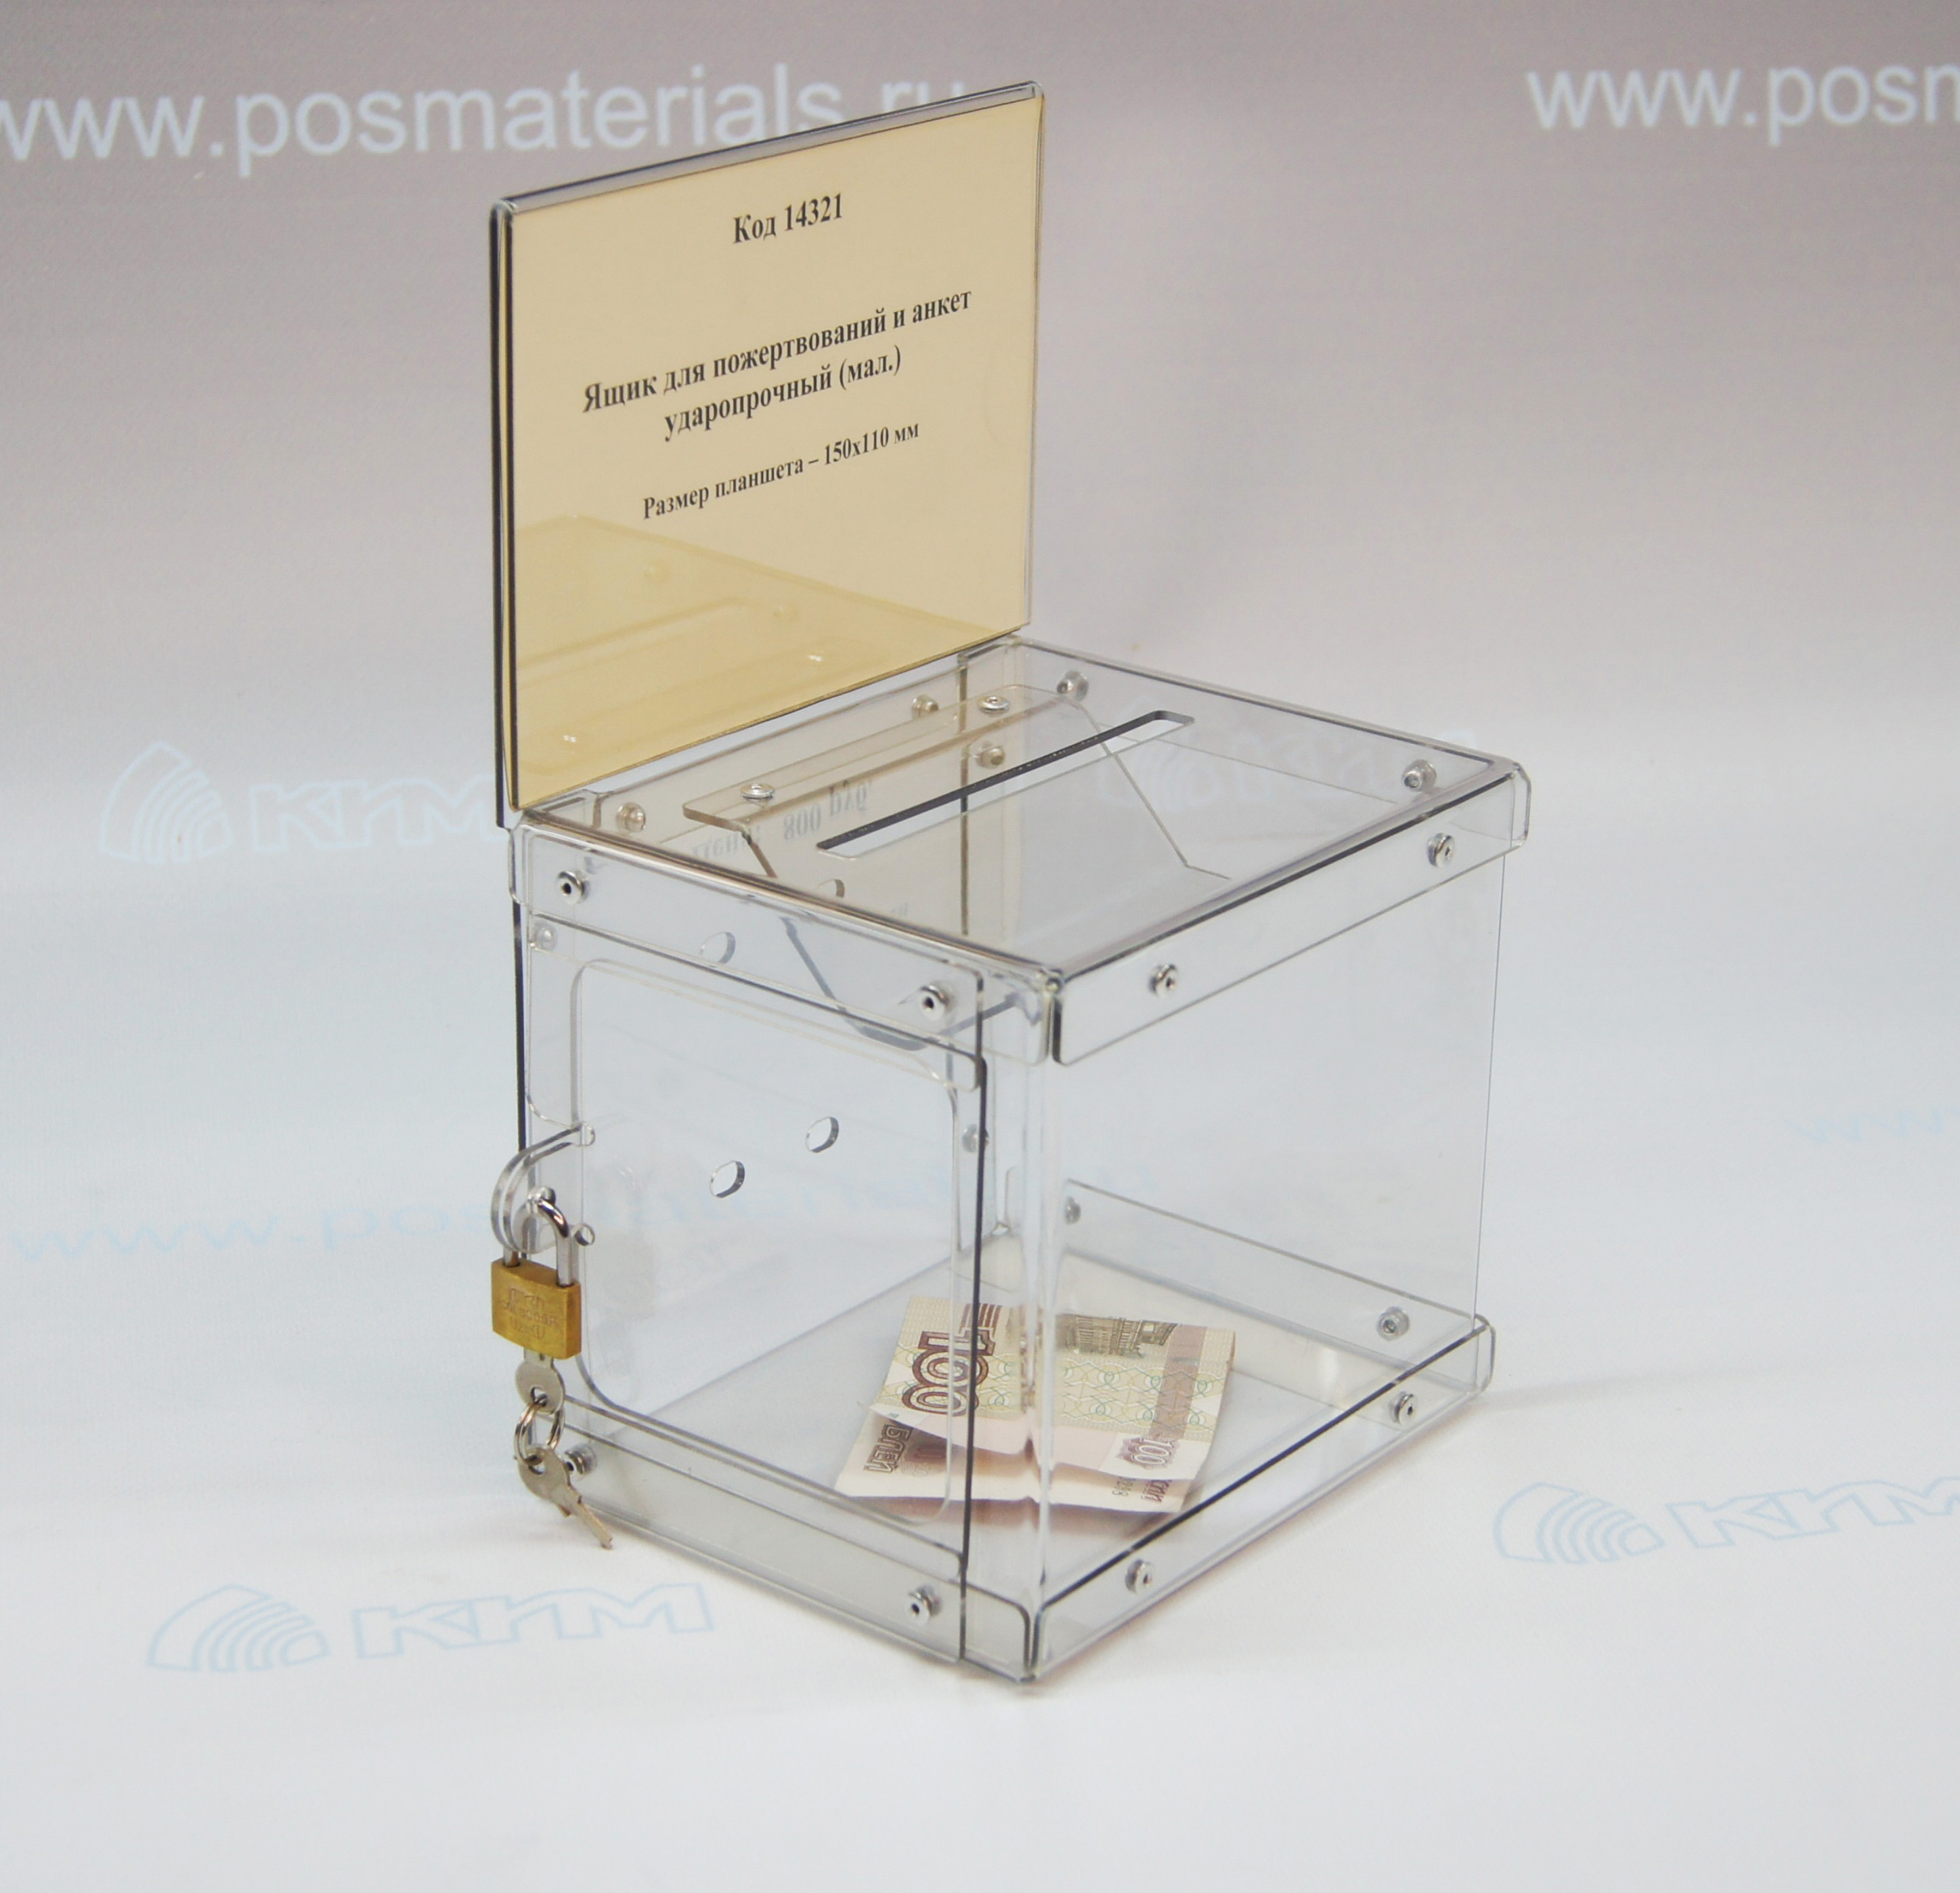 Фото товара: Ящик  для пожертвований и анкет ударопрочный (малый), арт. 14321